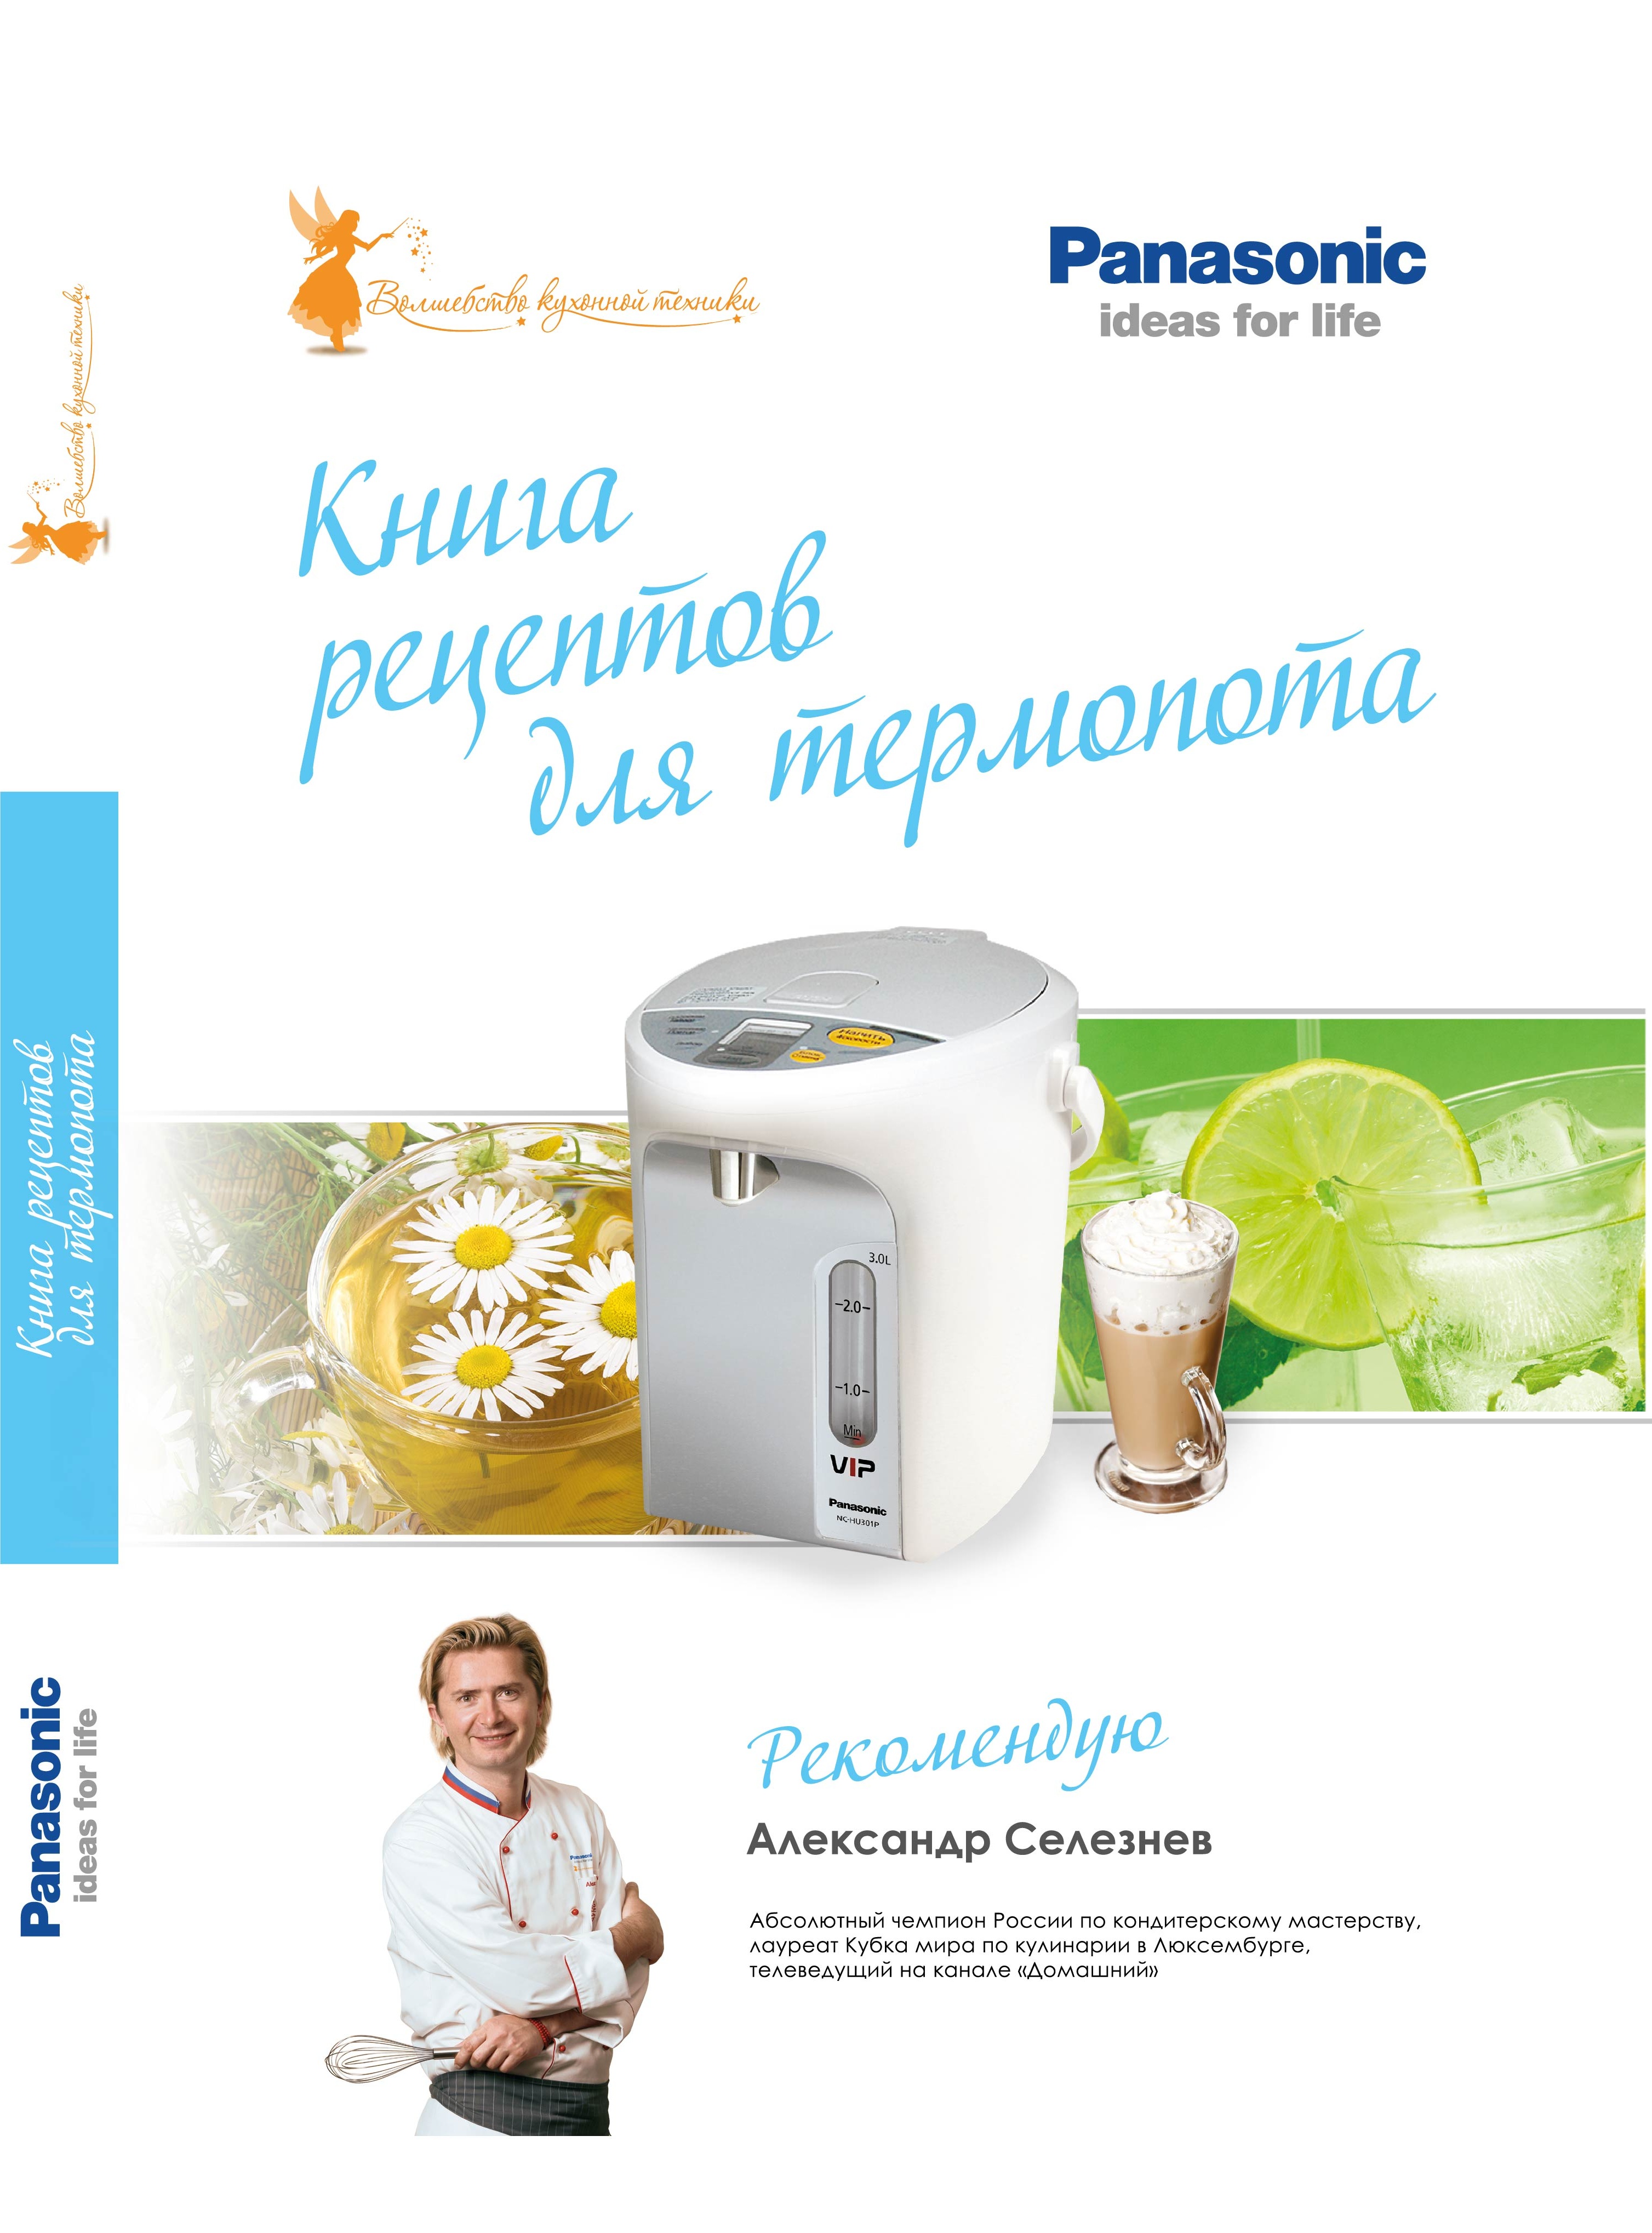 Книга рецептов Panasonic для термопотов